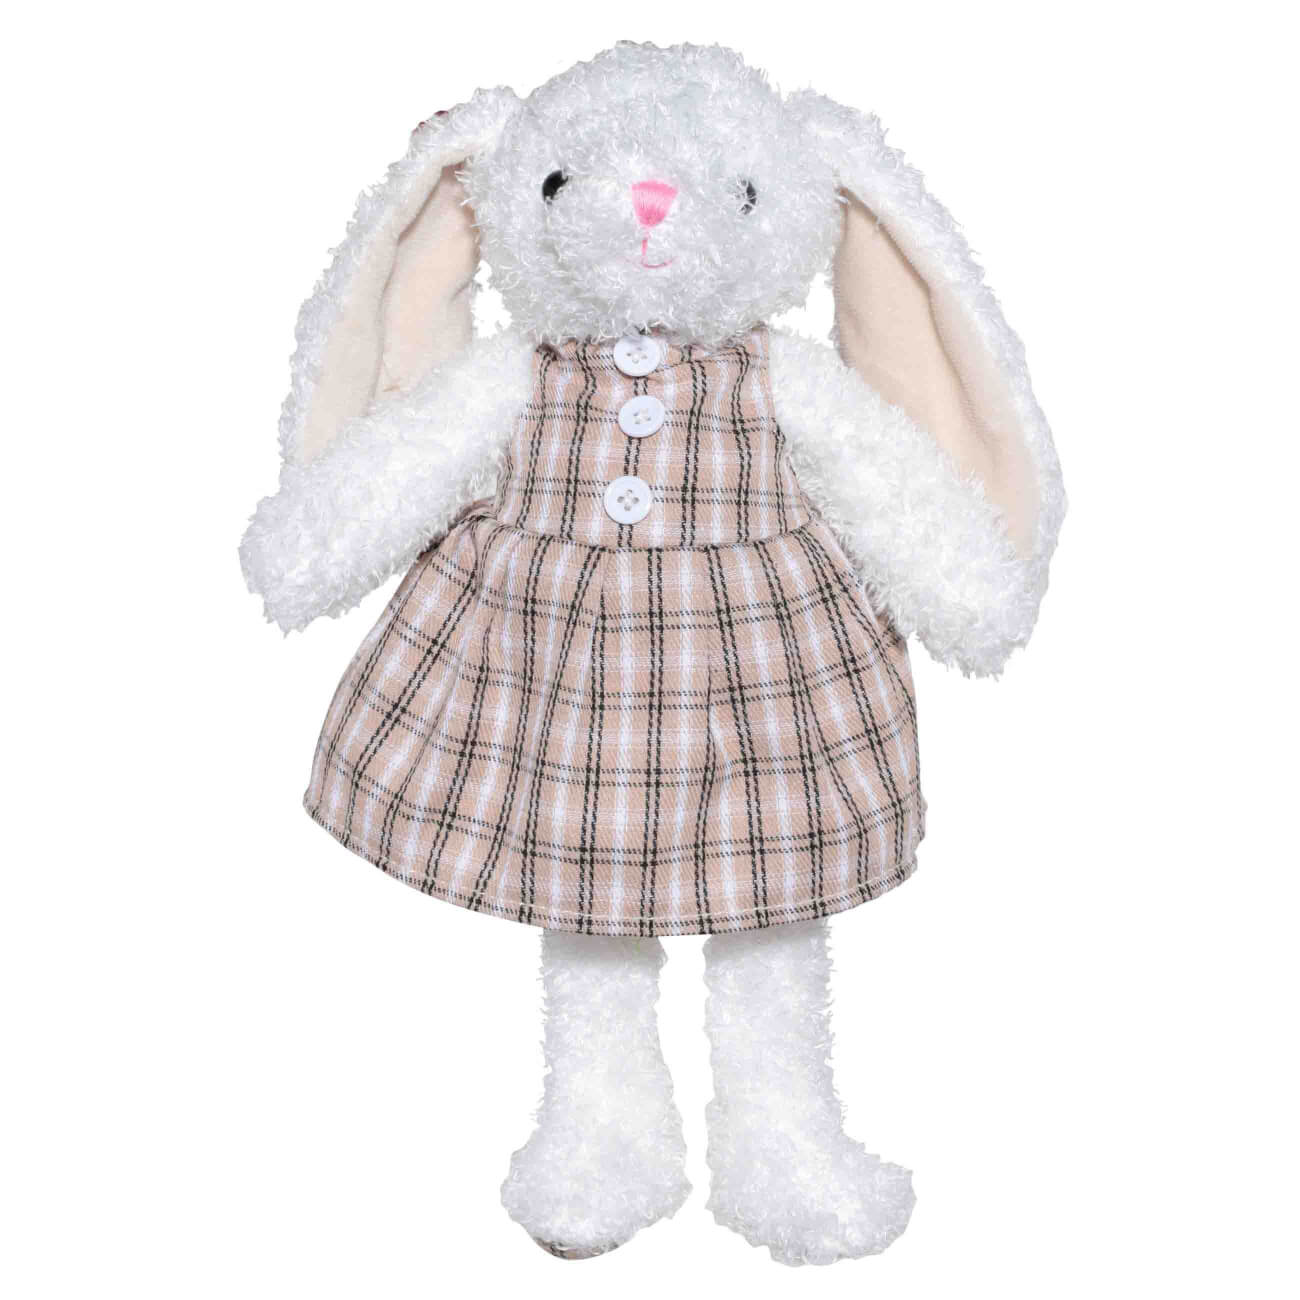 Игрушка, 21 см, мягкая, полиэстер, бежевая, Крольчиха в платье, Rabbit игрушка 25 см мягкая букле бежевая зайка rabbit